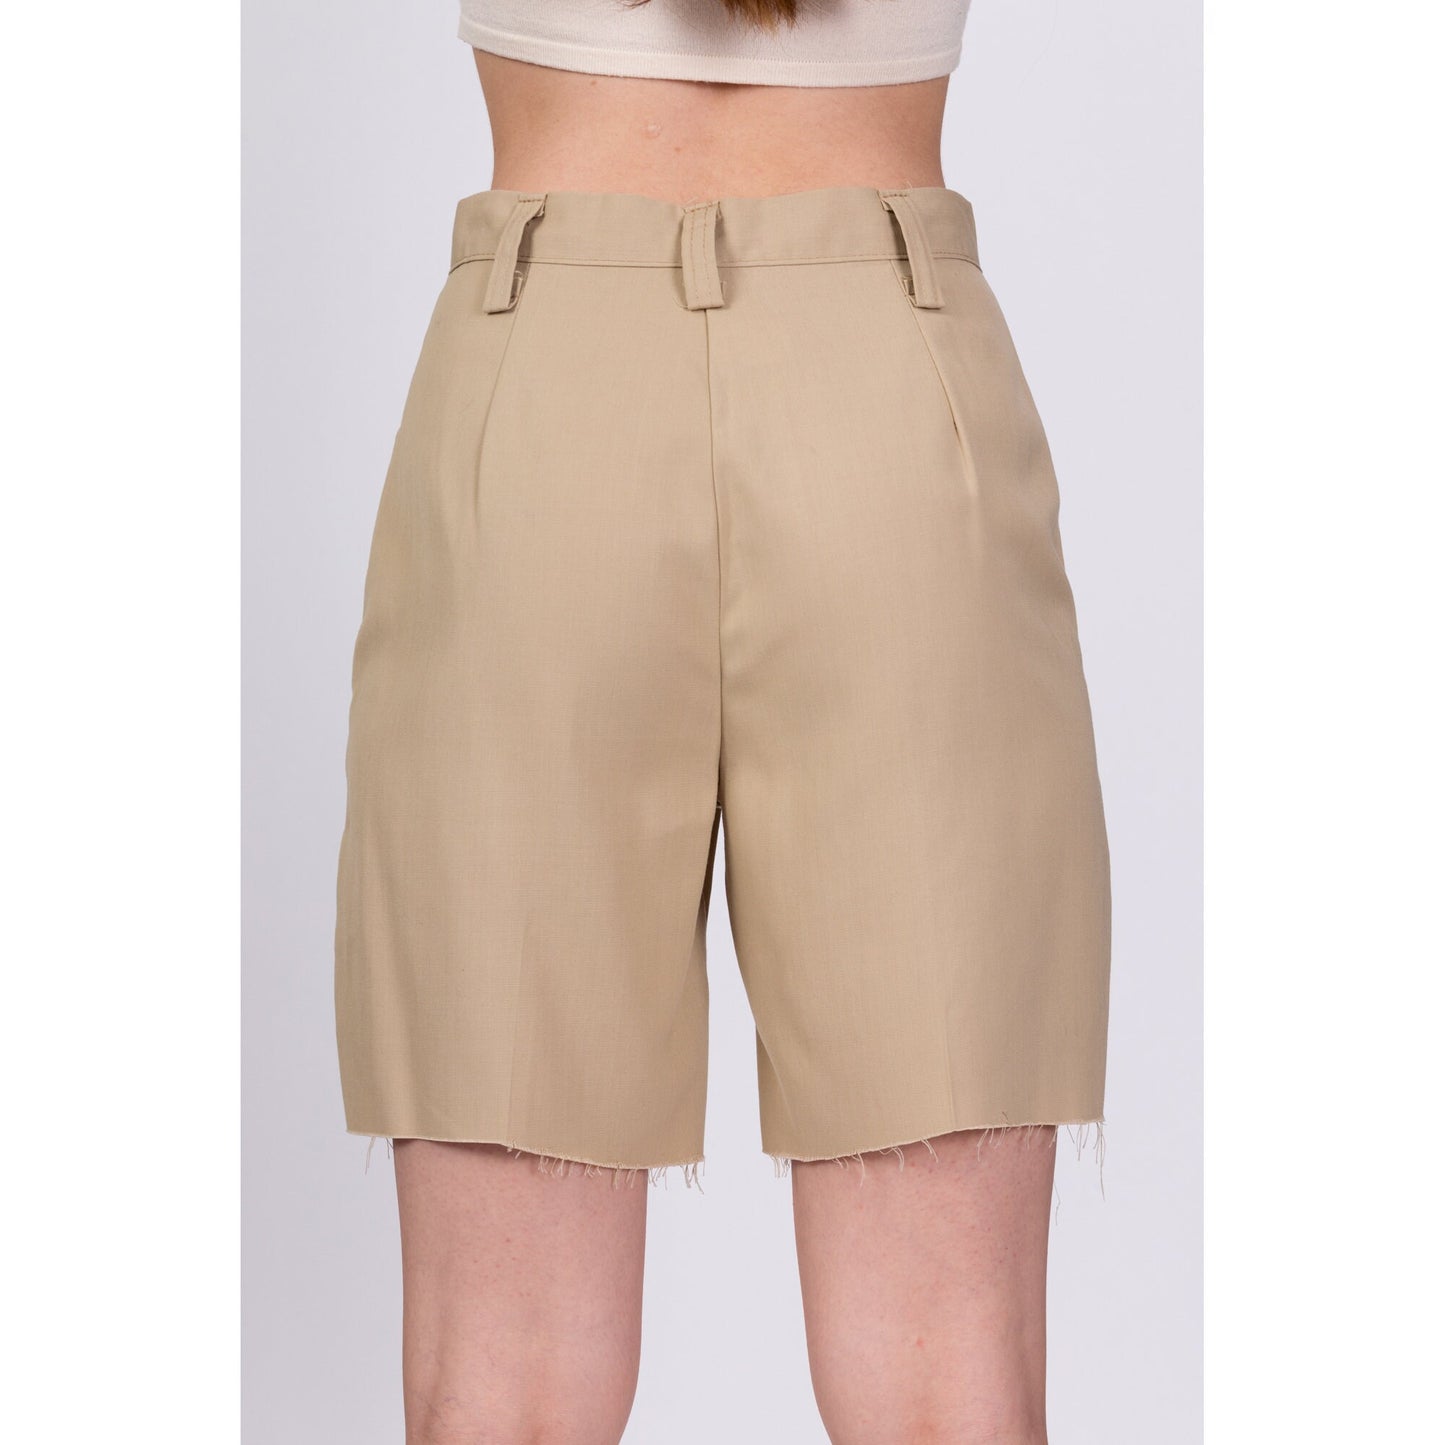 70s High Waisted Khaki Cutoff Shorts - Extra Small, 25" 